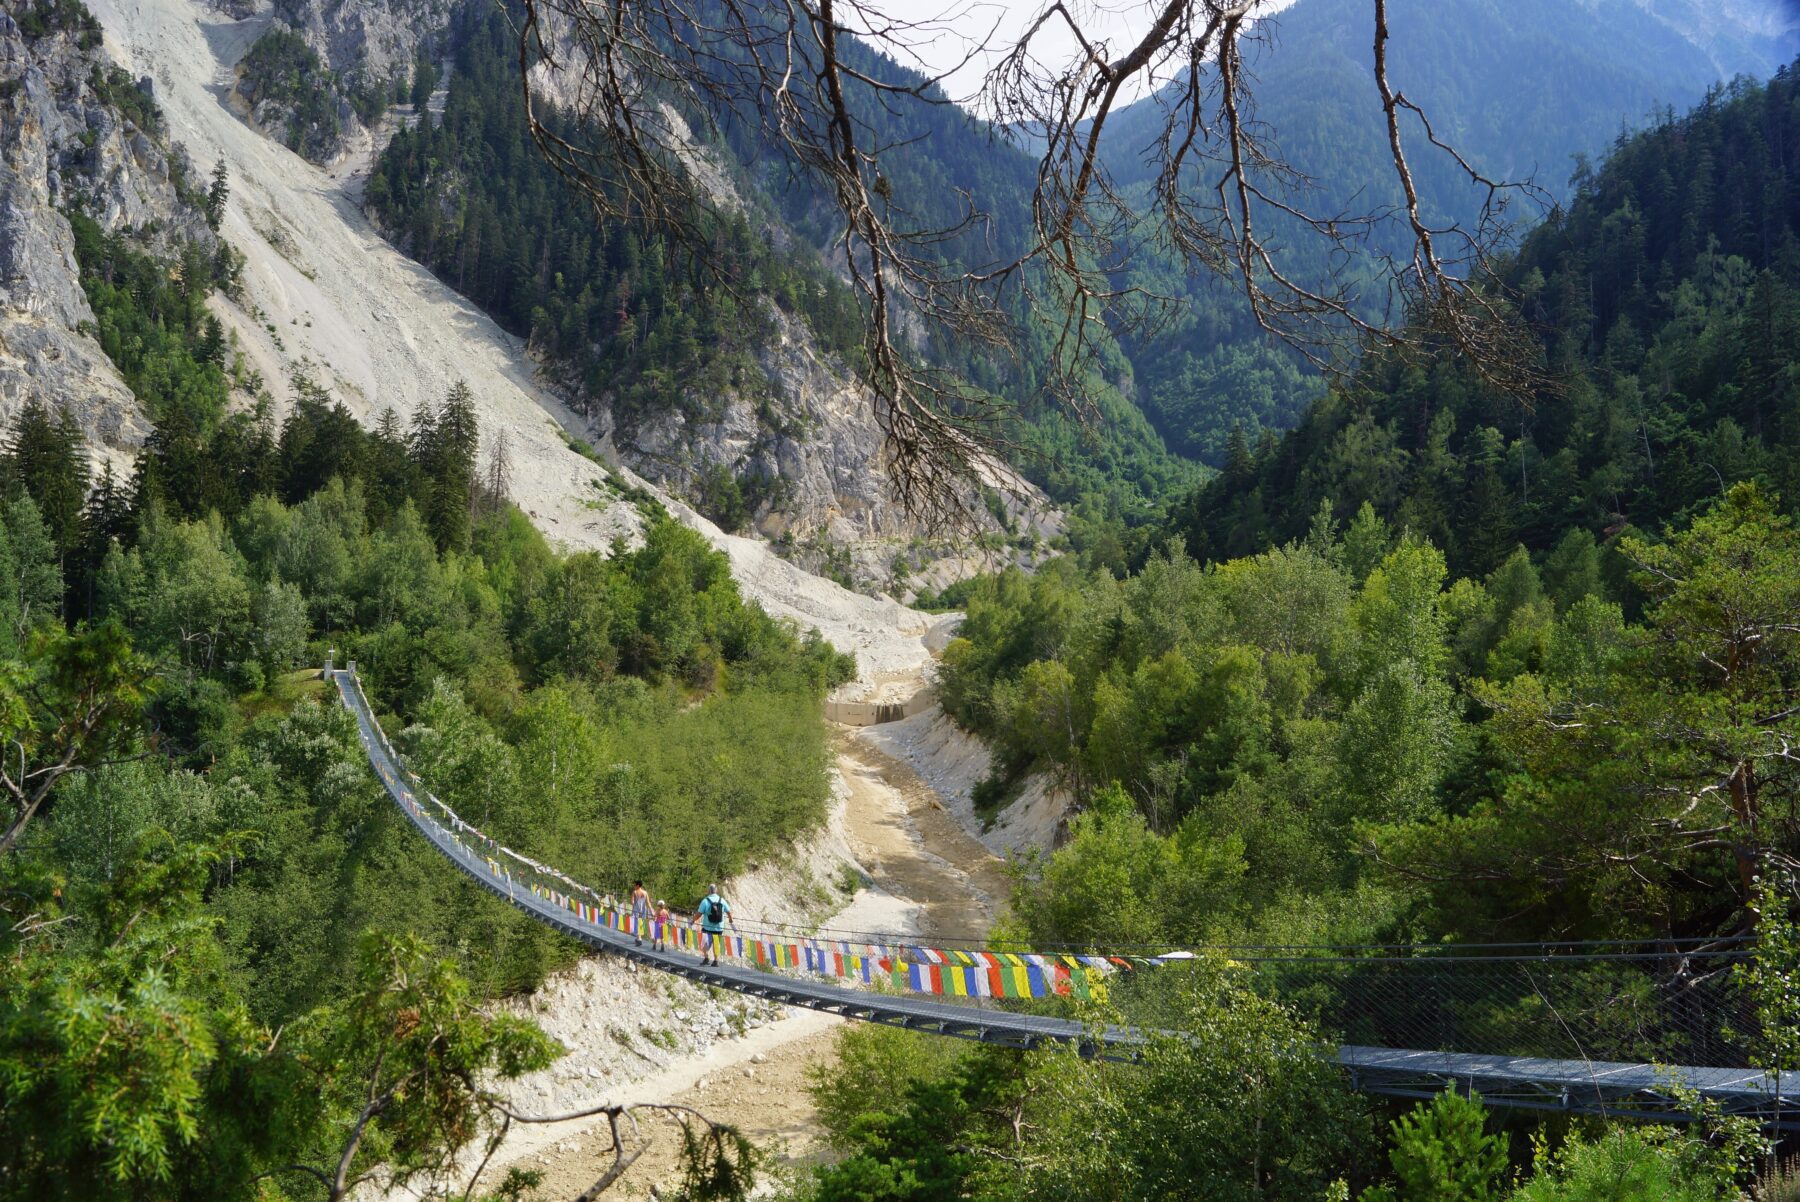 Hangbruggen in Zwitserland